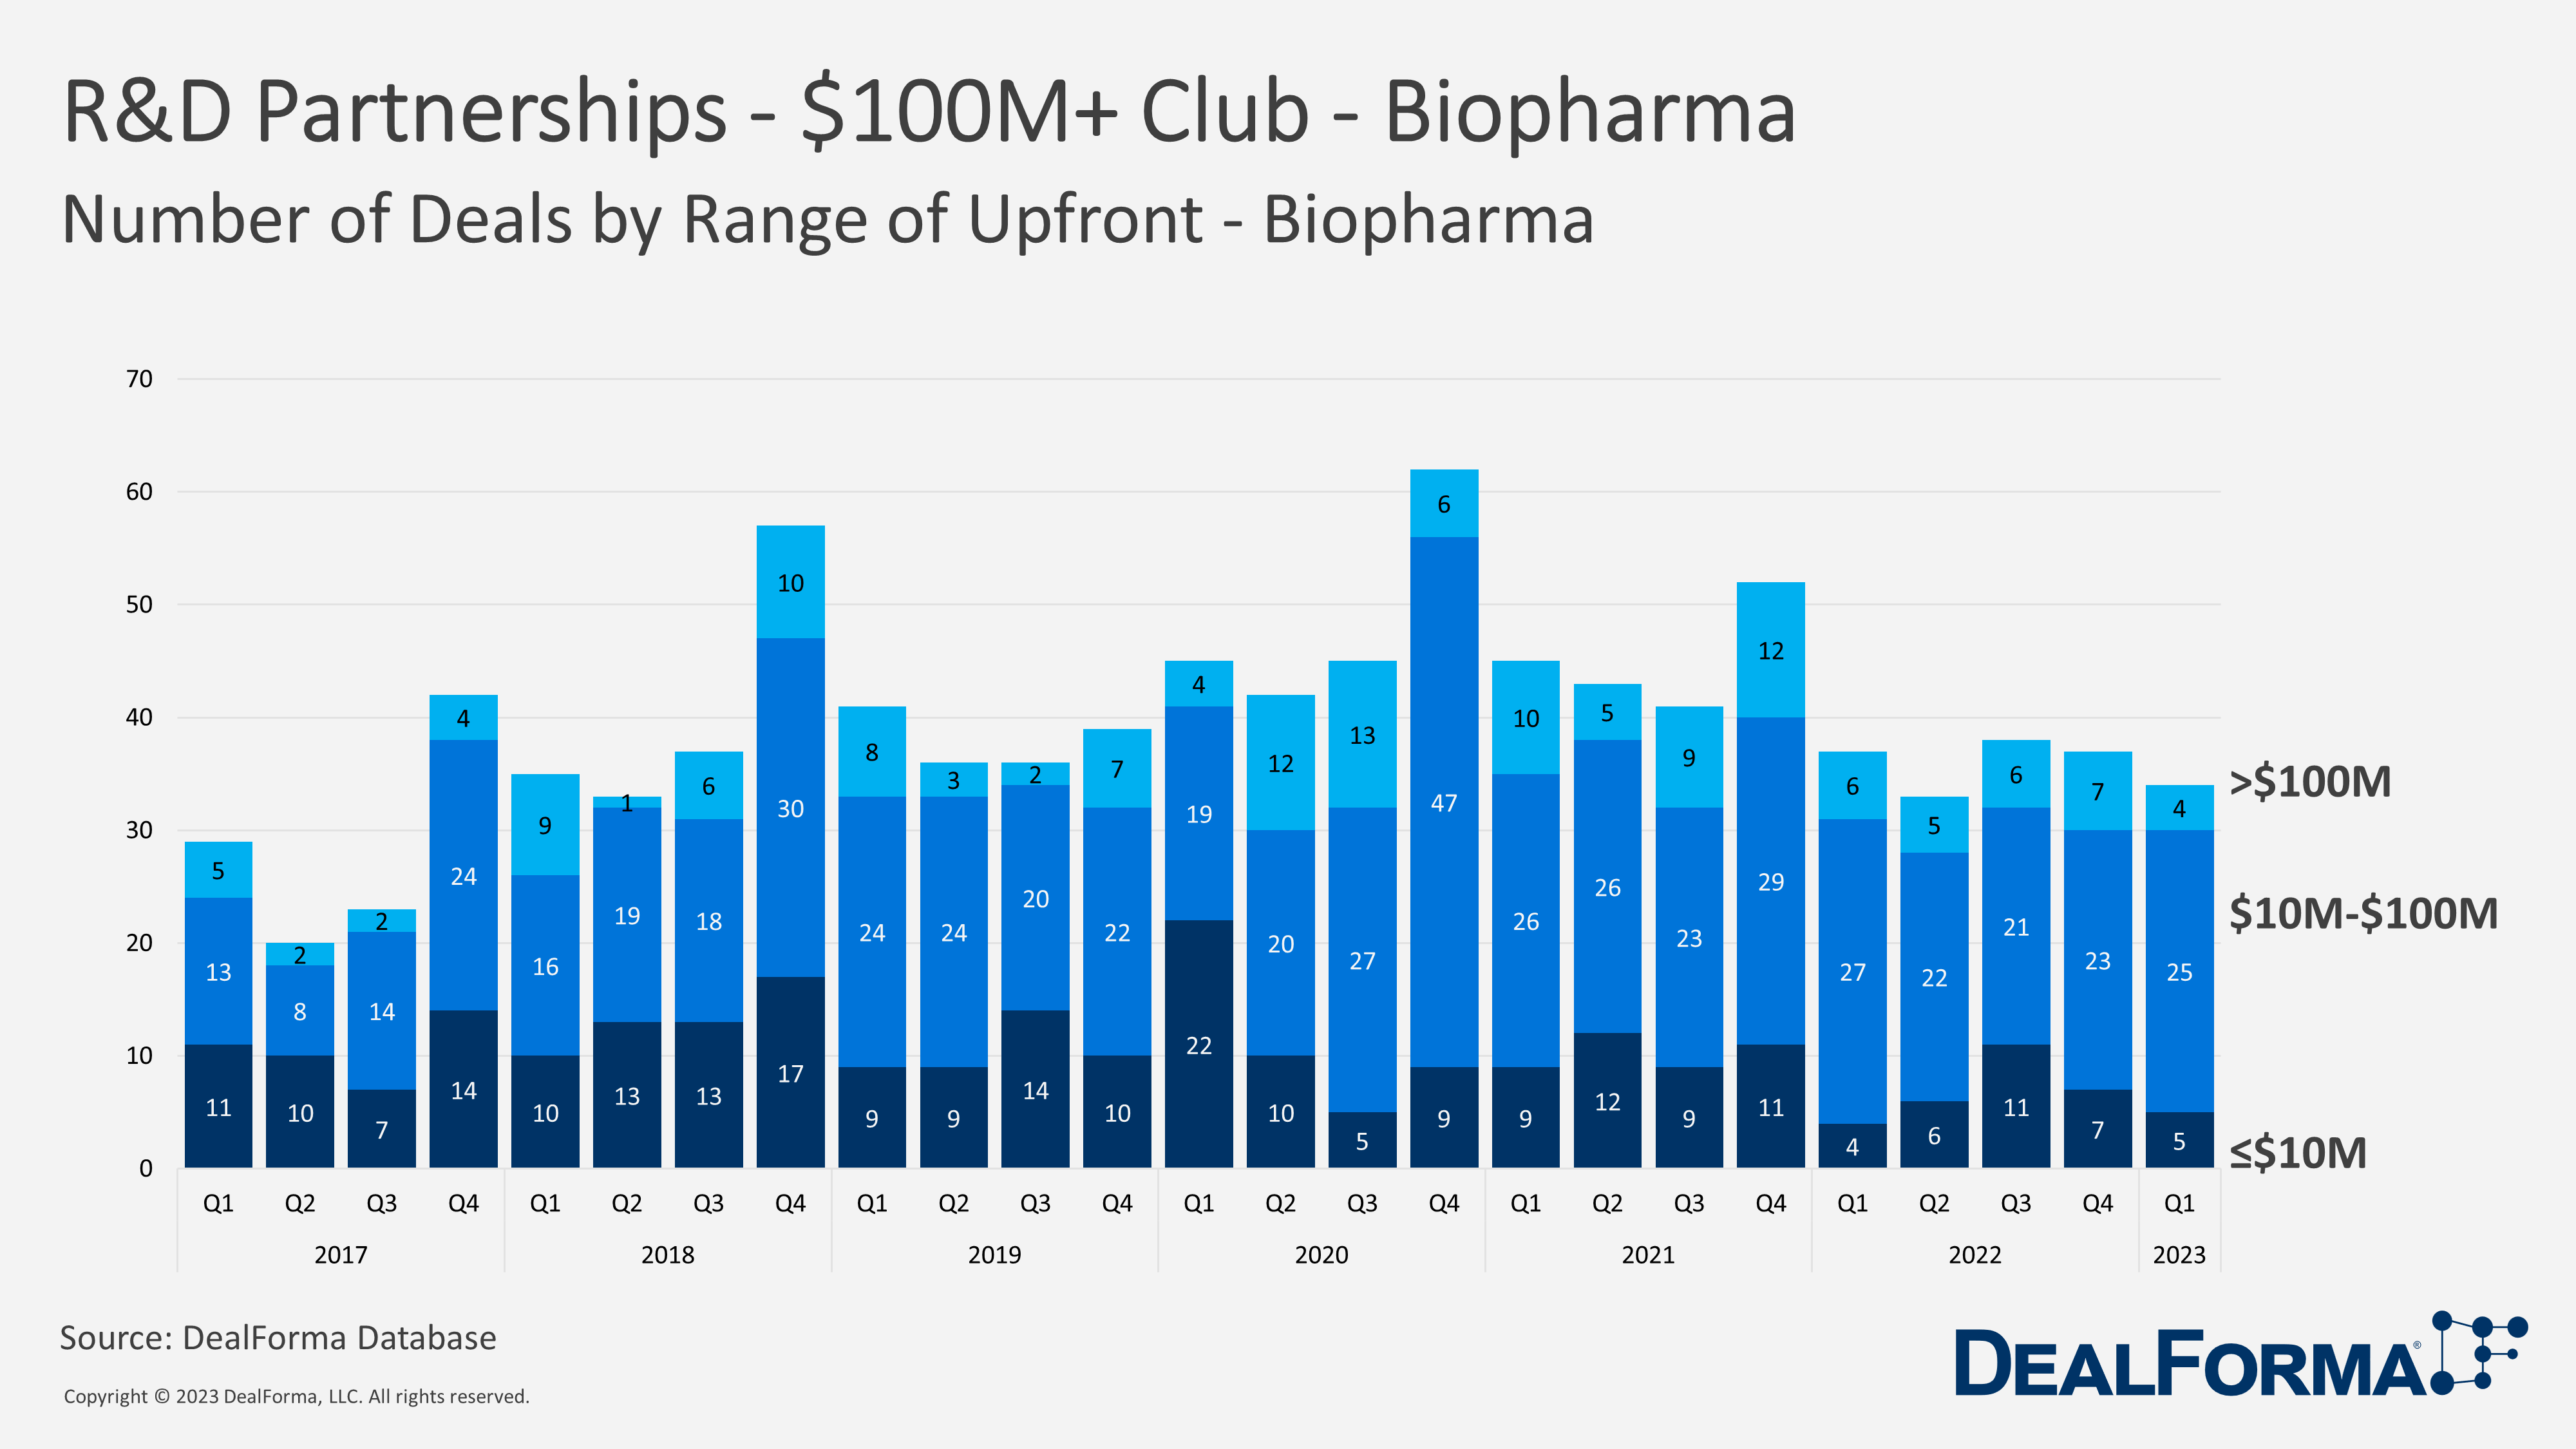 R&D Partnerships - $100M+ Club - Biopharma